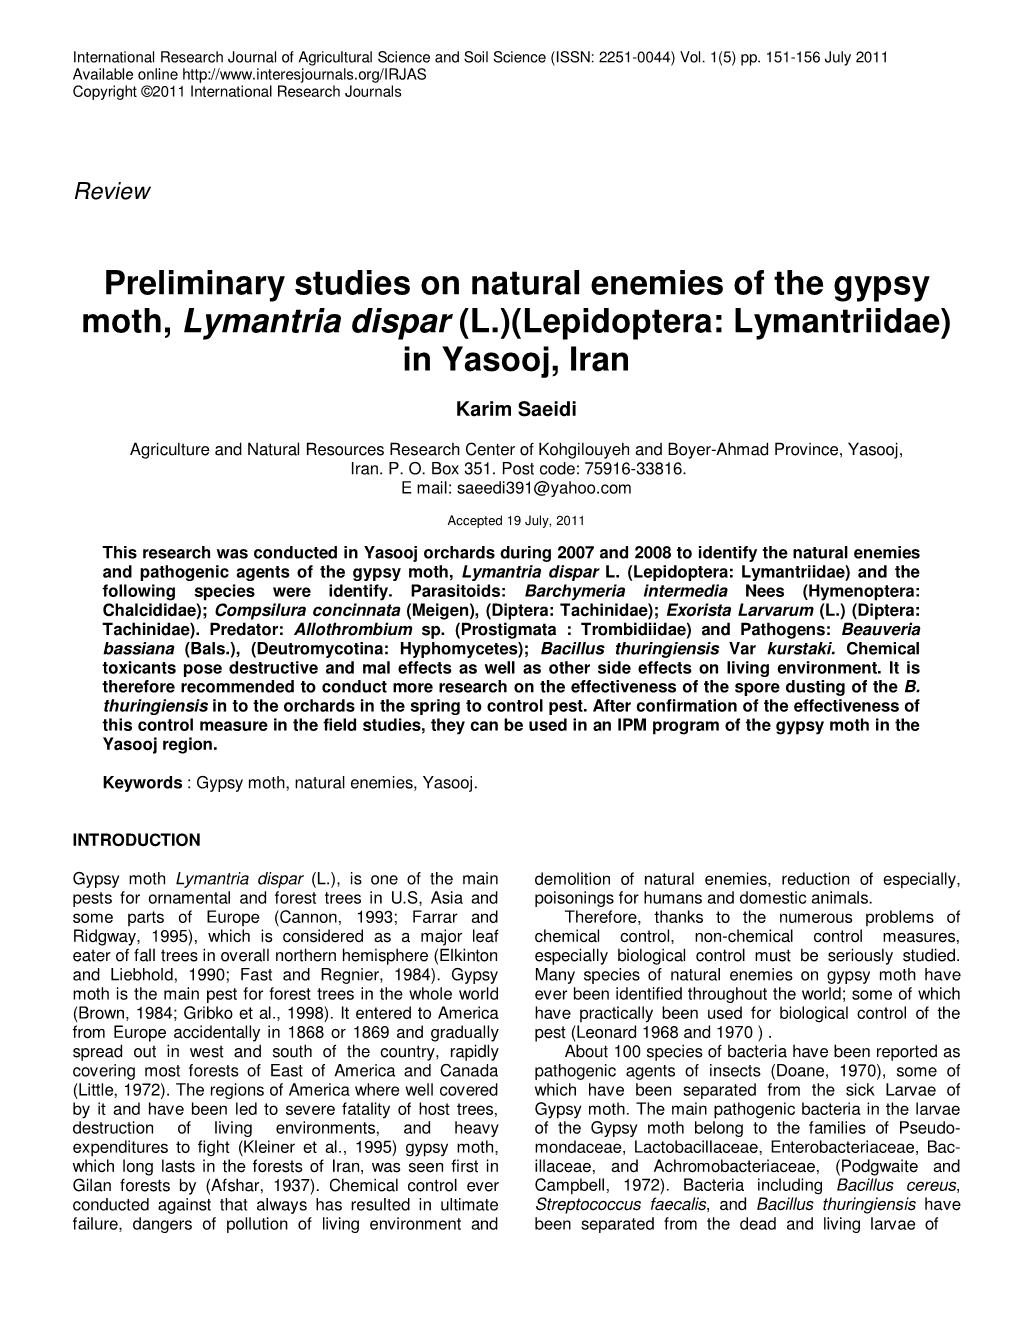 Preliminary Studies on Natural Enemies of the Gypsy Moth, Lymantria Dispar (L.)(Lepidoptera: Lymantriidae) in Yasooj, Iran